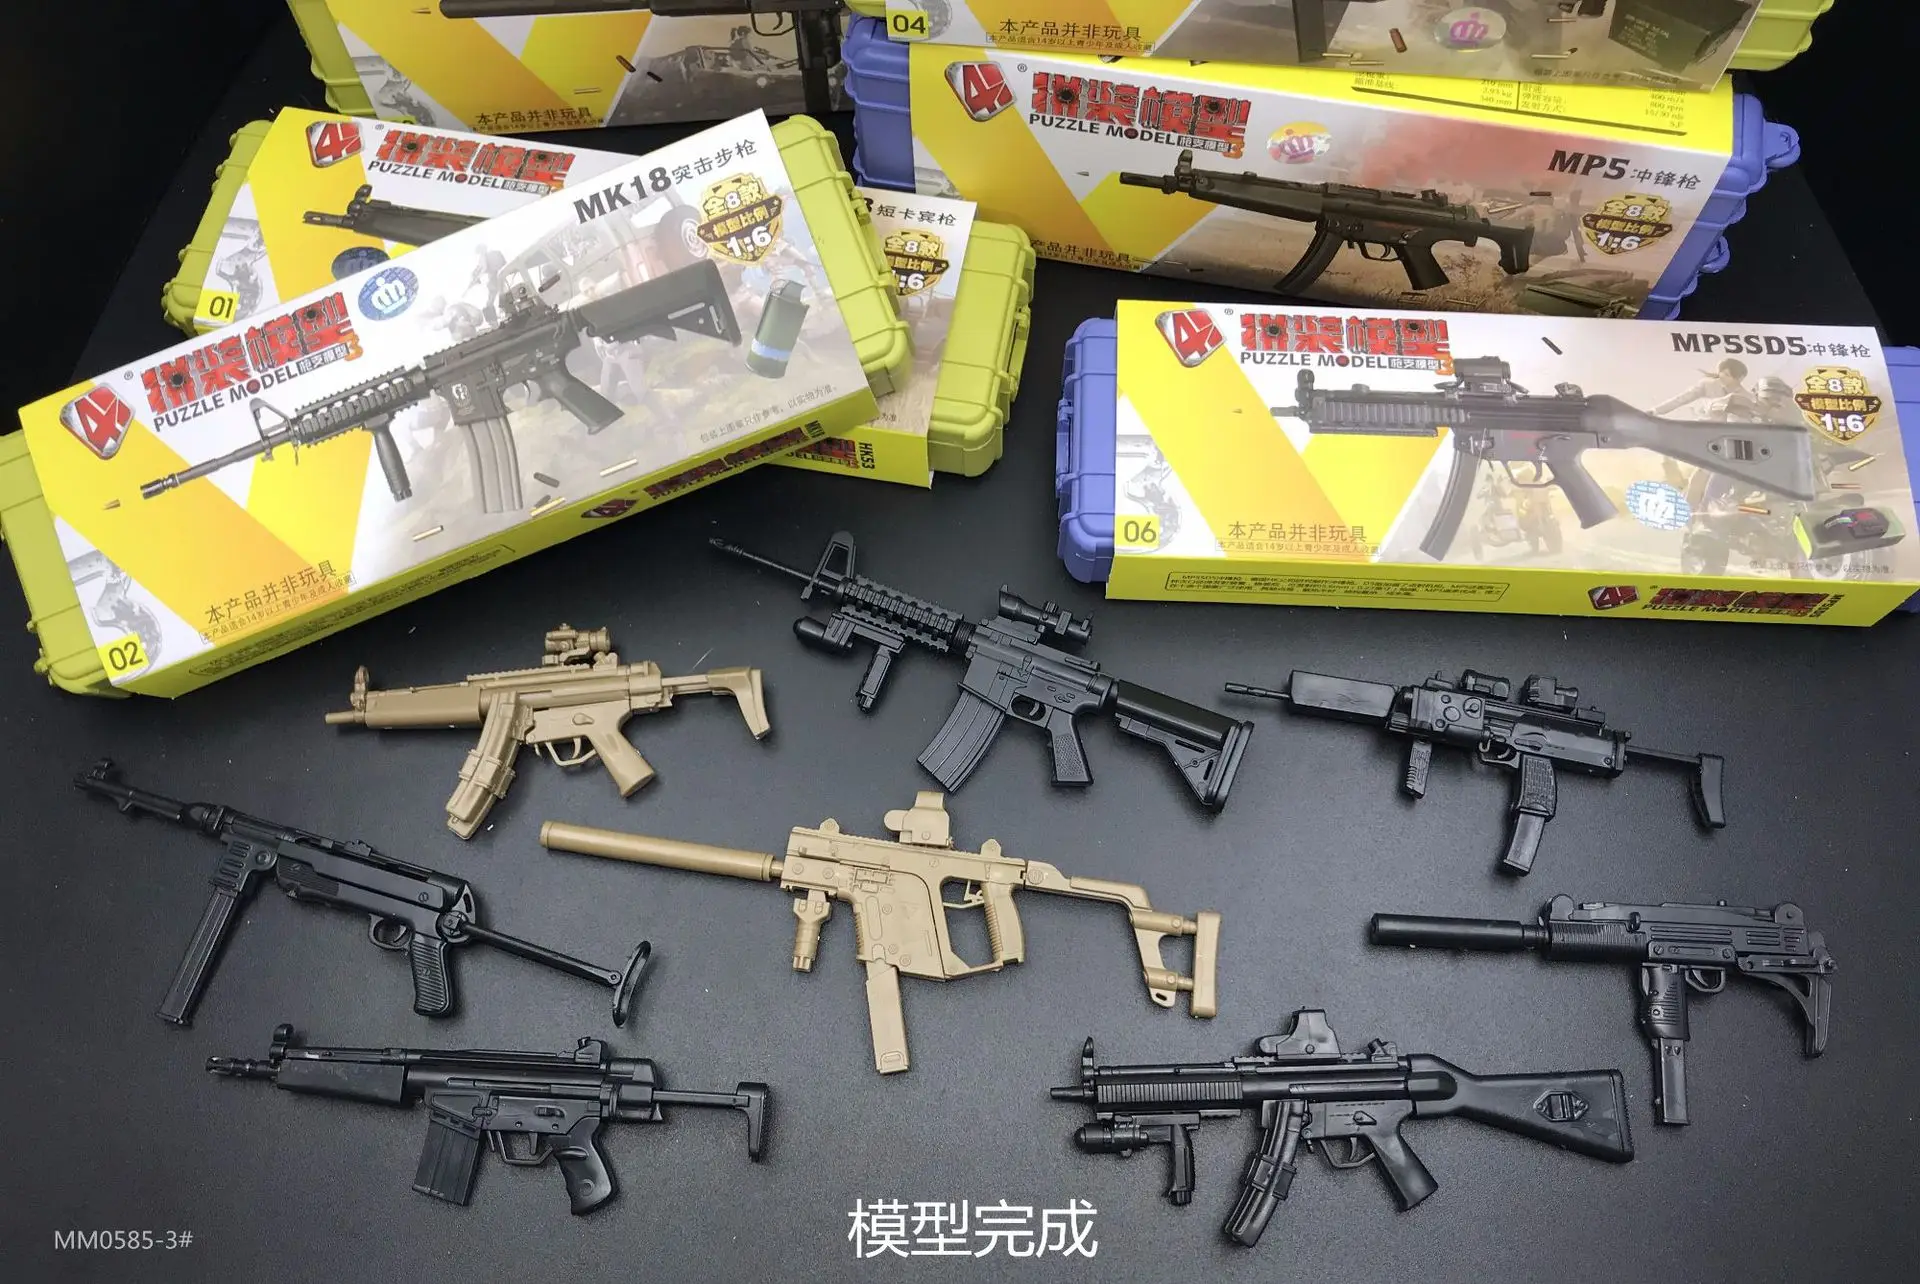 1:6 третьего поколения пистолет Модель MP5 MP40 УЗИ 4D модель головоломка DIY статический военная модель Пластик собраны модель оружия игрушки